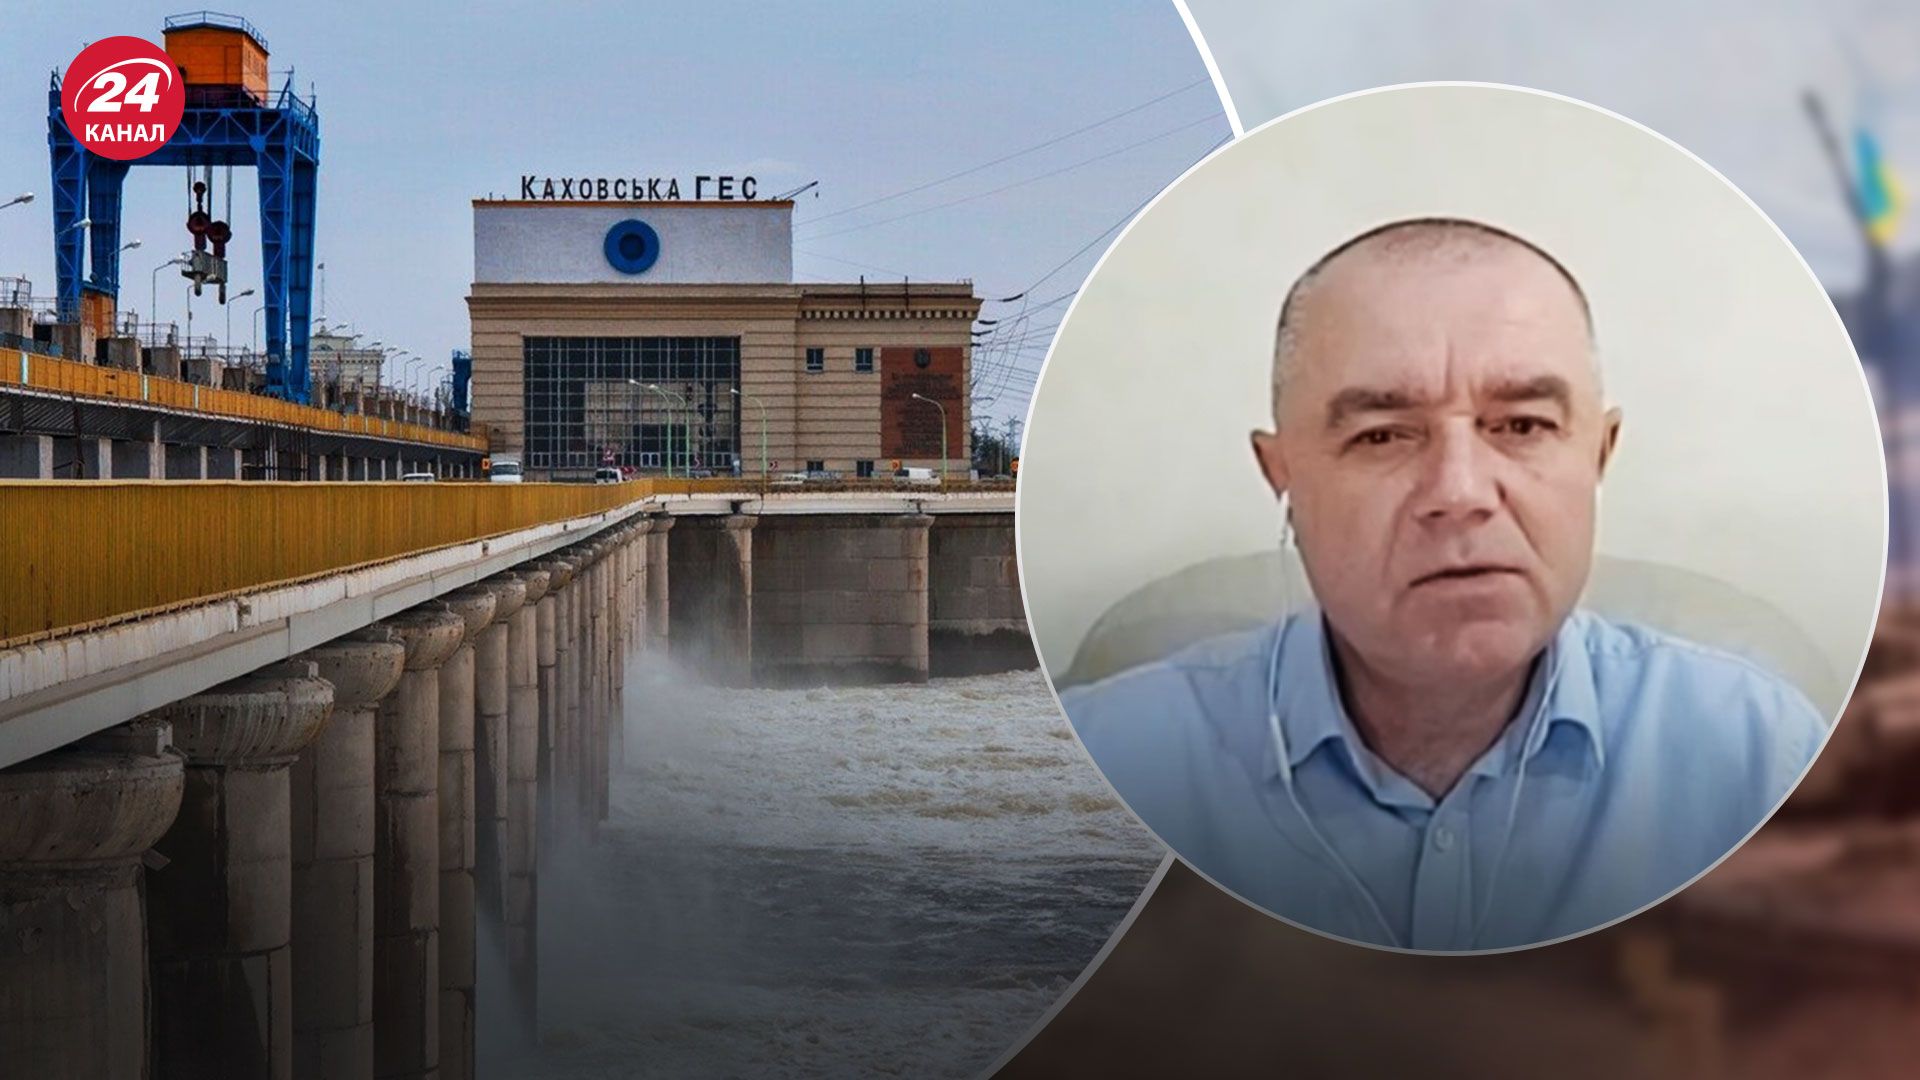 Каховская ГЭС – в чем наибольшая опасность подрыва дамбы